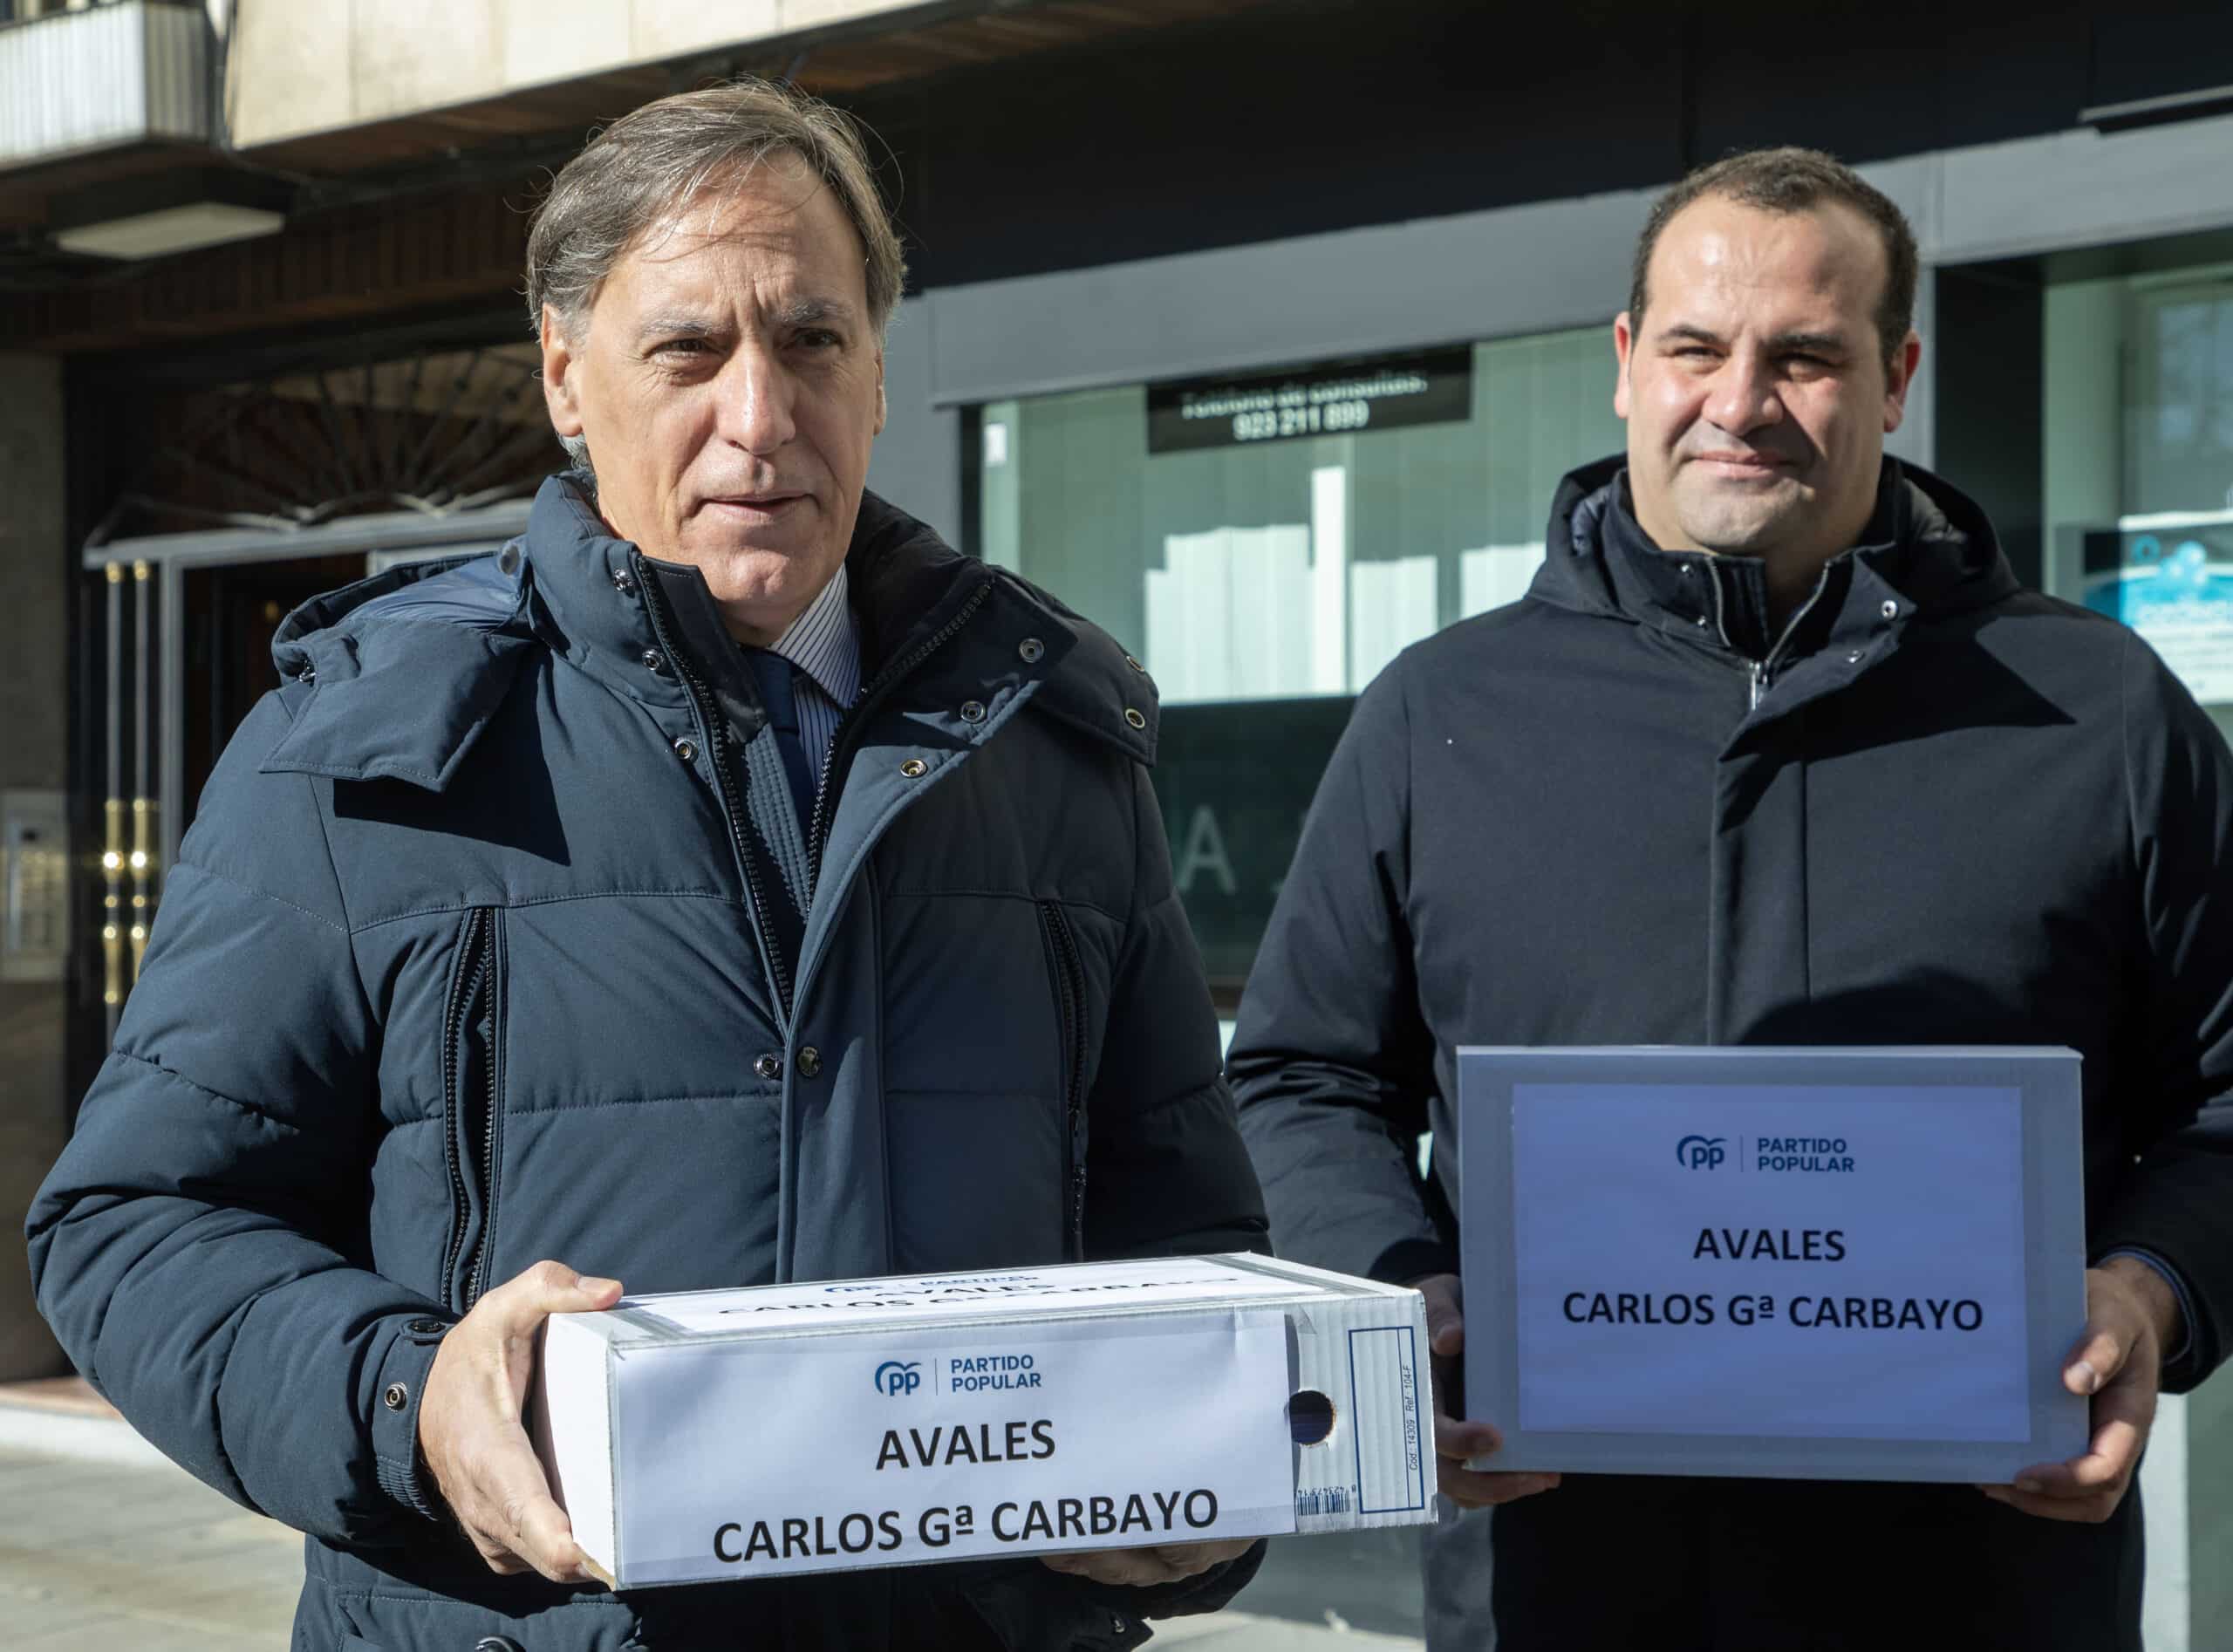 García Carbayo presenta 1.185 avales para concurrir al congreso del PP de Salamanca